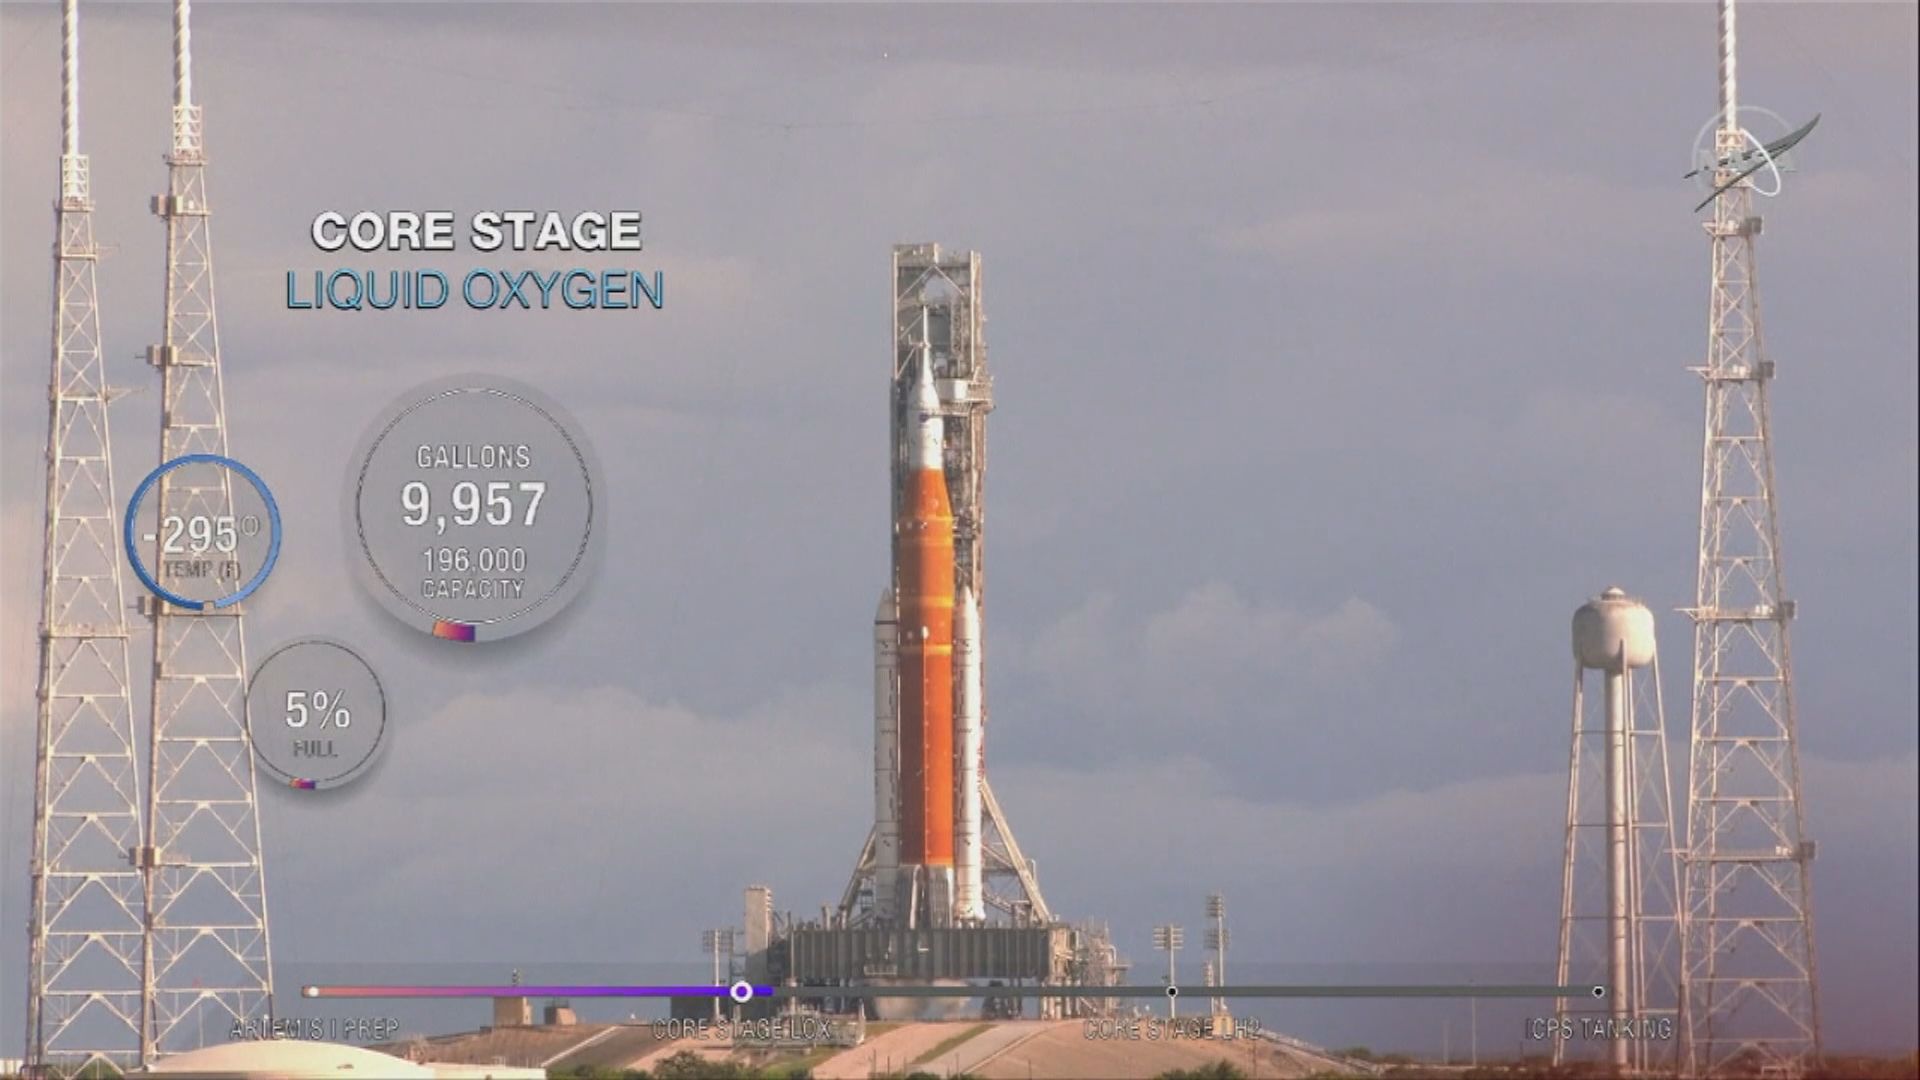 【環球薈報】美國繞月任務火箭燃料注射測試符合預定目標